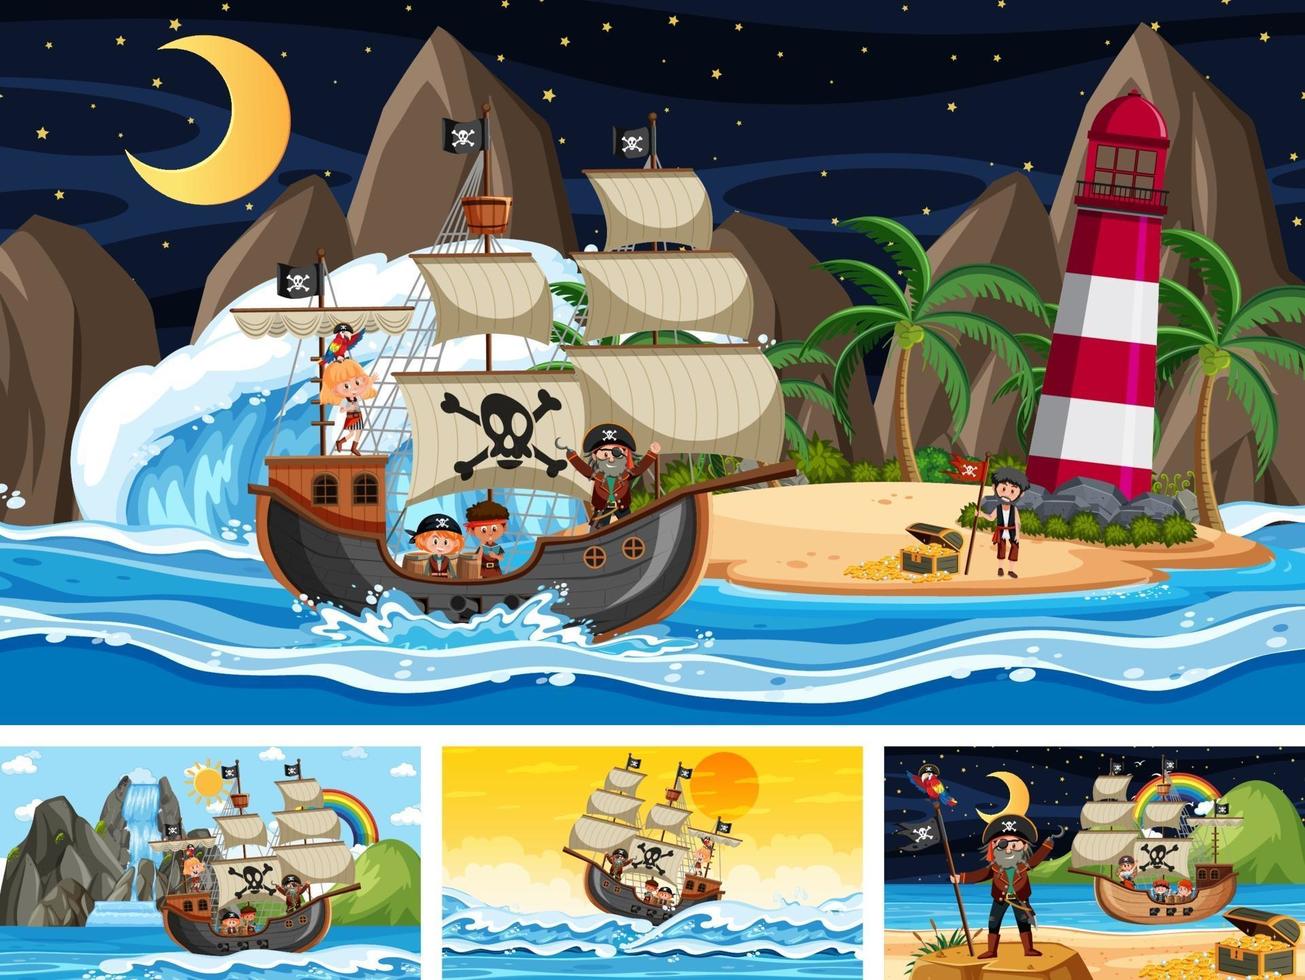 conjunto de diferentes cenas de praia com navio pirata vetor